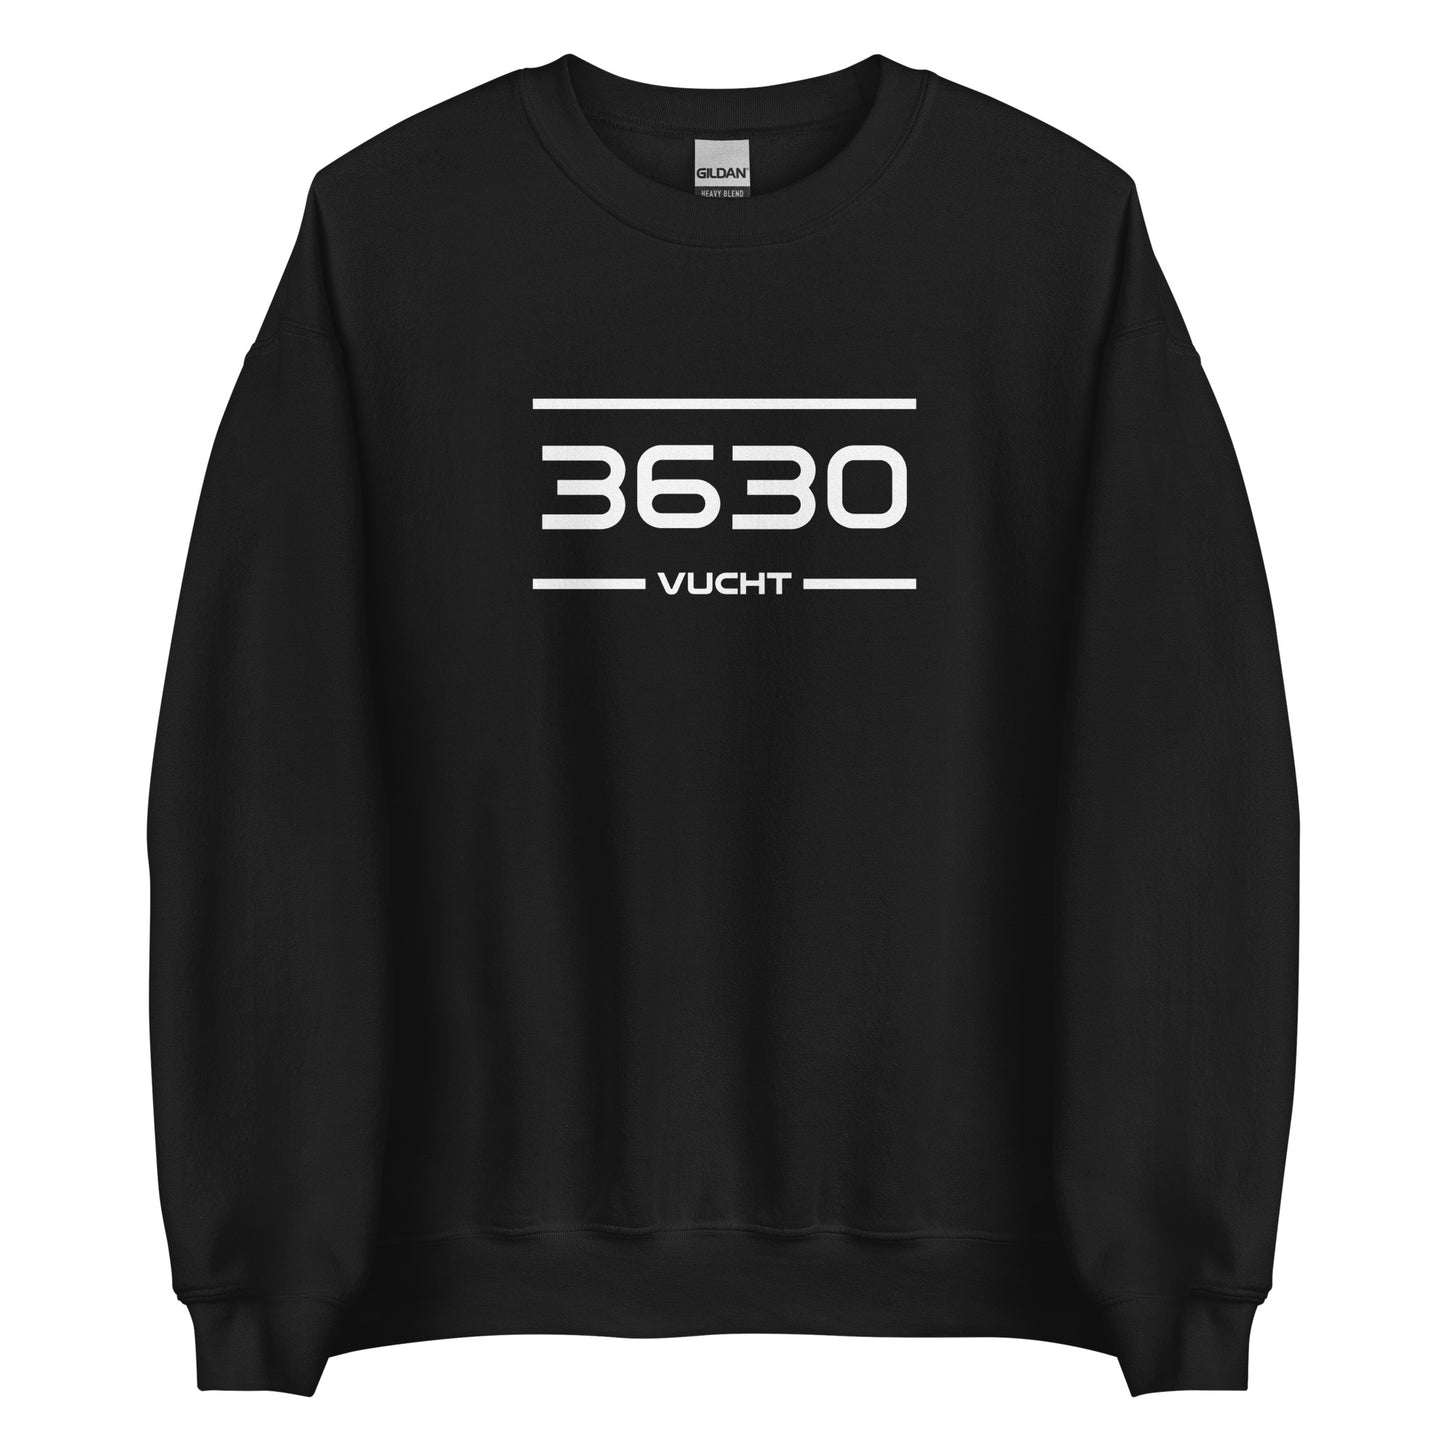 Sweater - 3630 - Vucht (M/V)